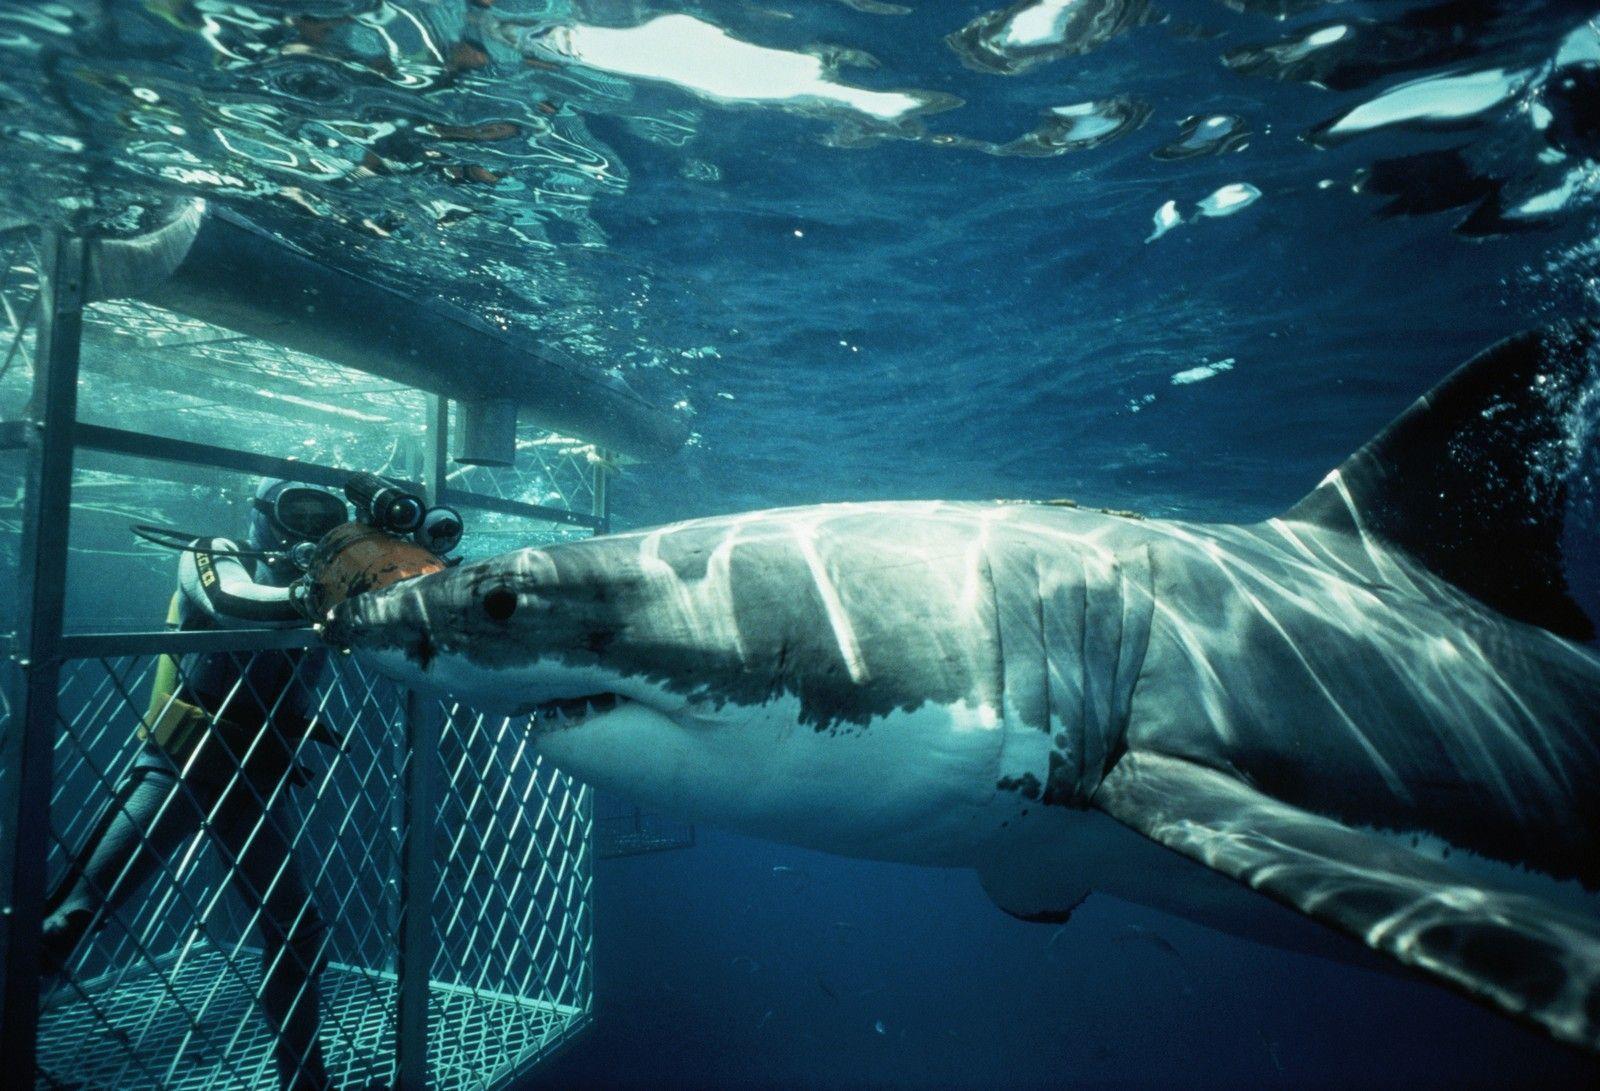 Diver in Cage Observing Shark